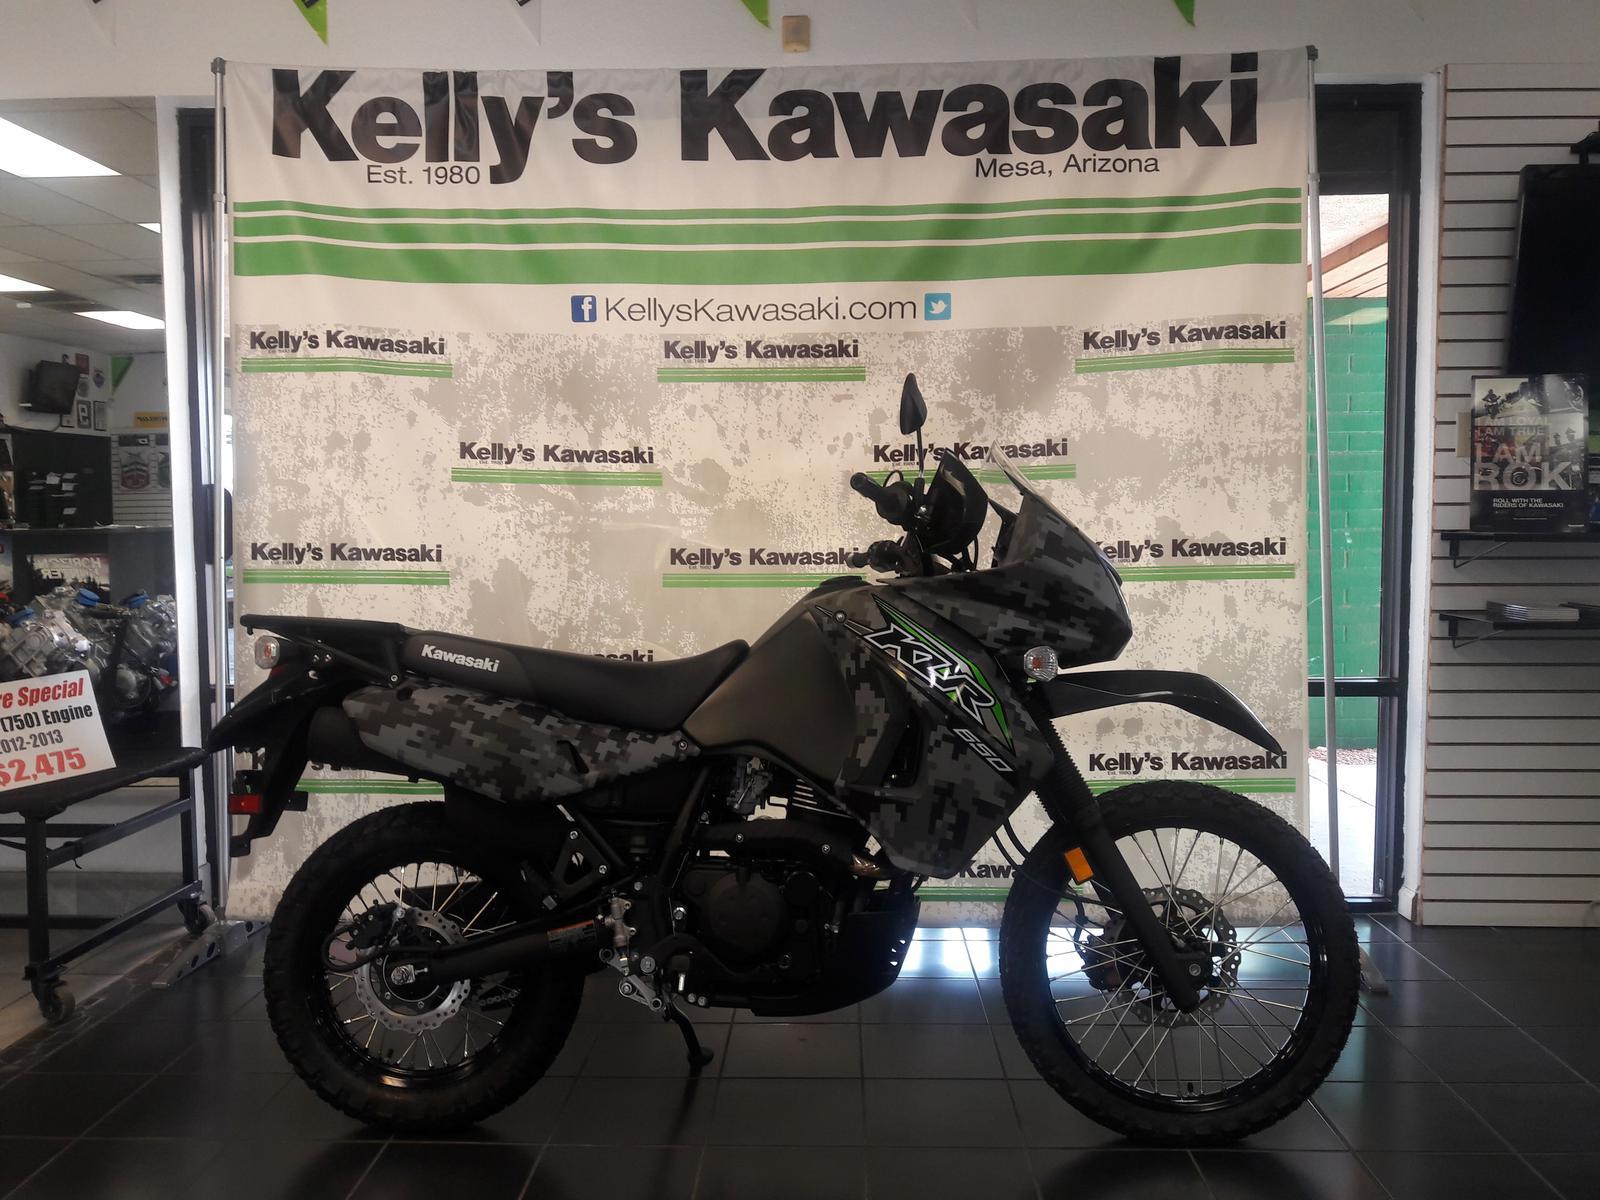 Camo Kawasaki Logo - 2018 Kawasaki KLR 650 CAMO for sale in Mesa, AZ. Kelly's Kawasaki ...